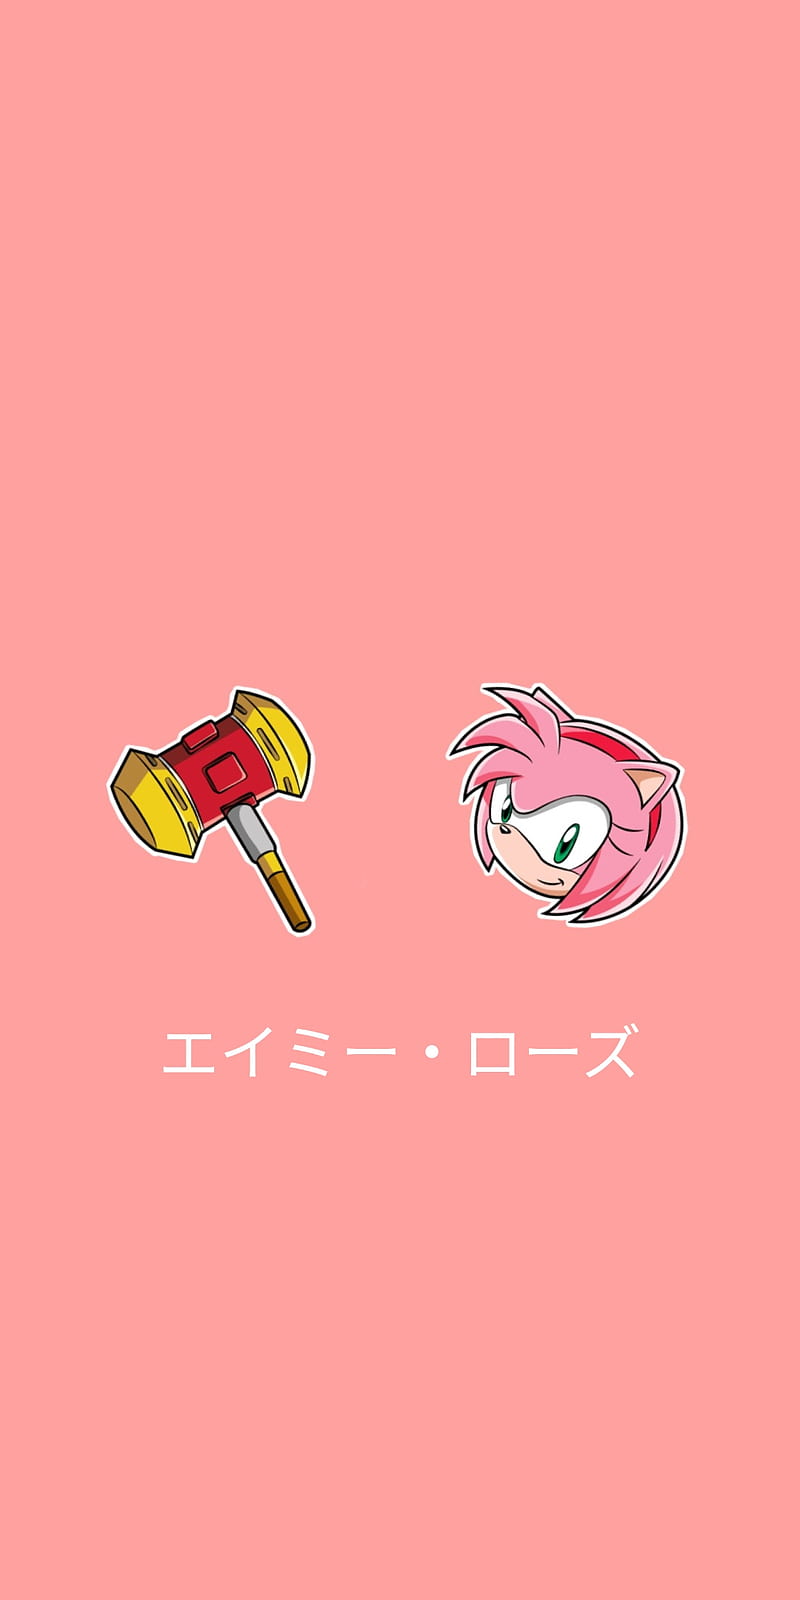 Wallpaper art Amy Rose Sonic the Hedgehog images for desktop section  игры  download